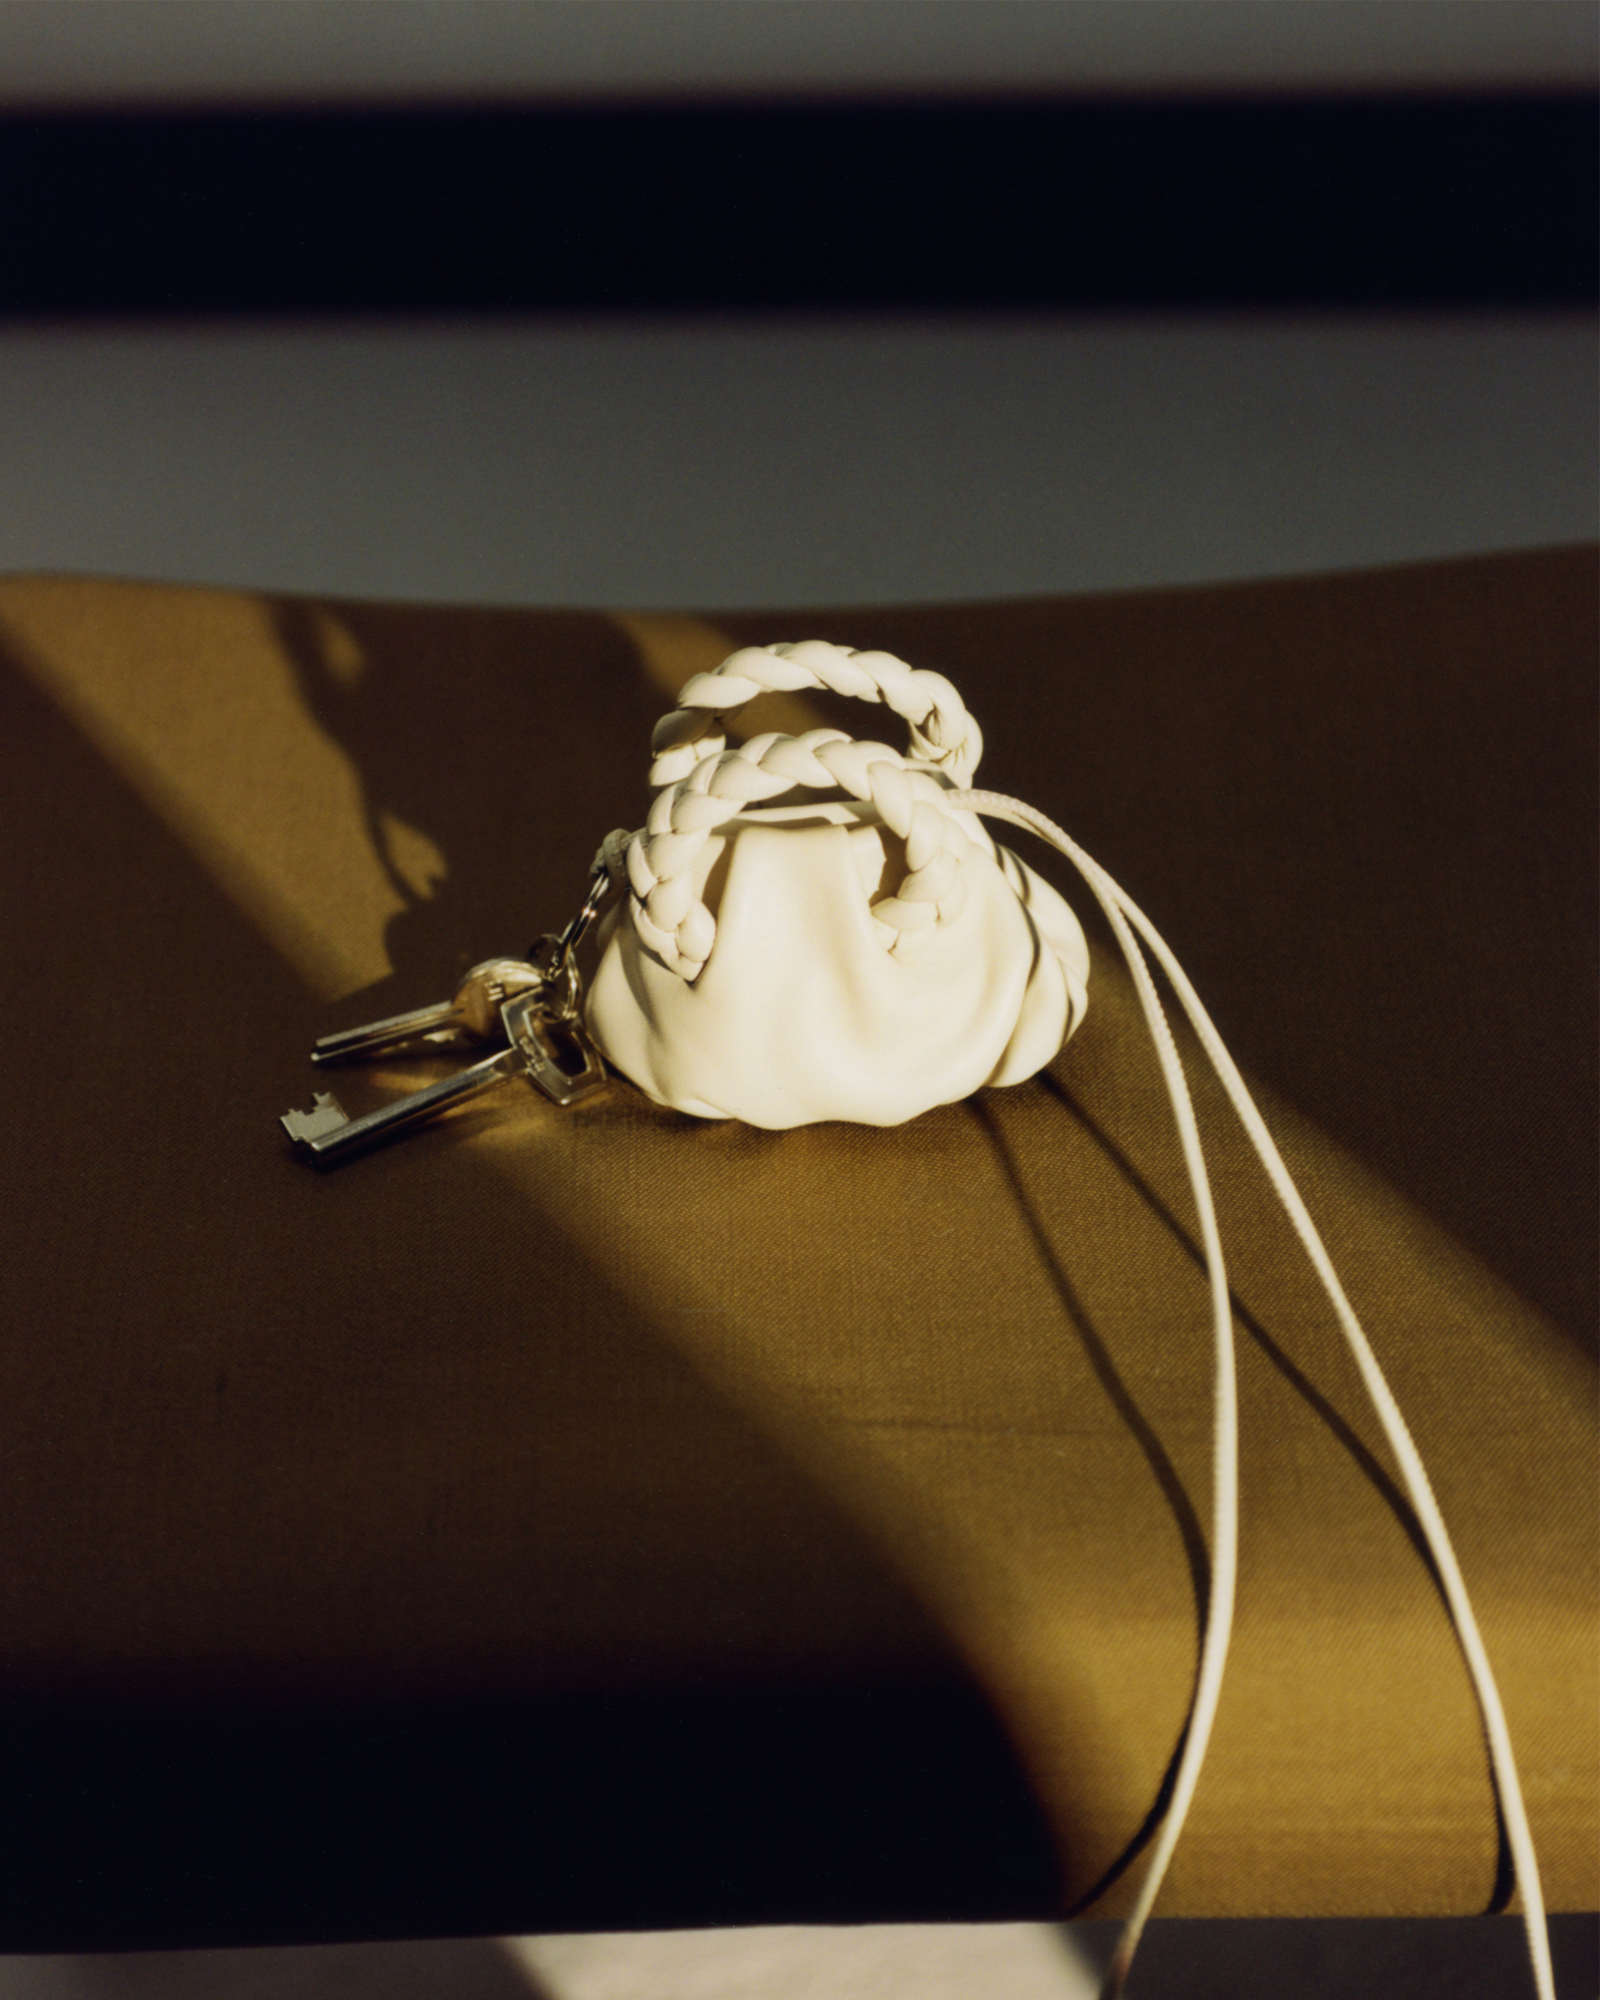 PERLETA - Beaded Mini Drawstring Tote Bag – Hereu Studio